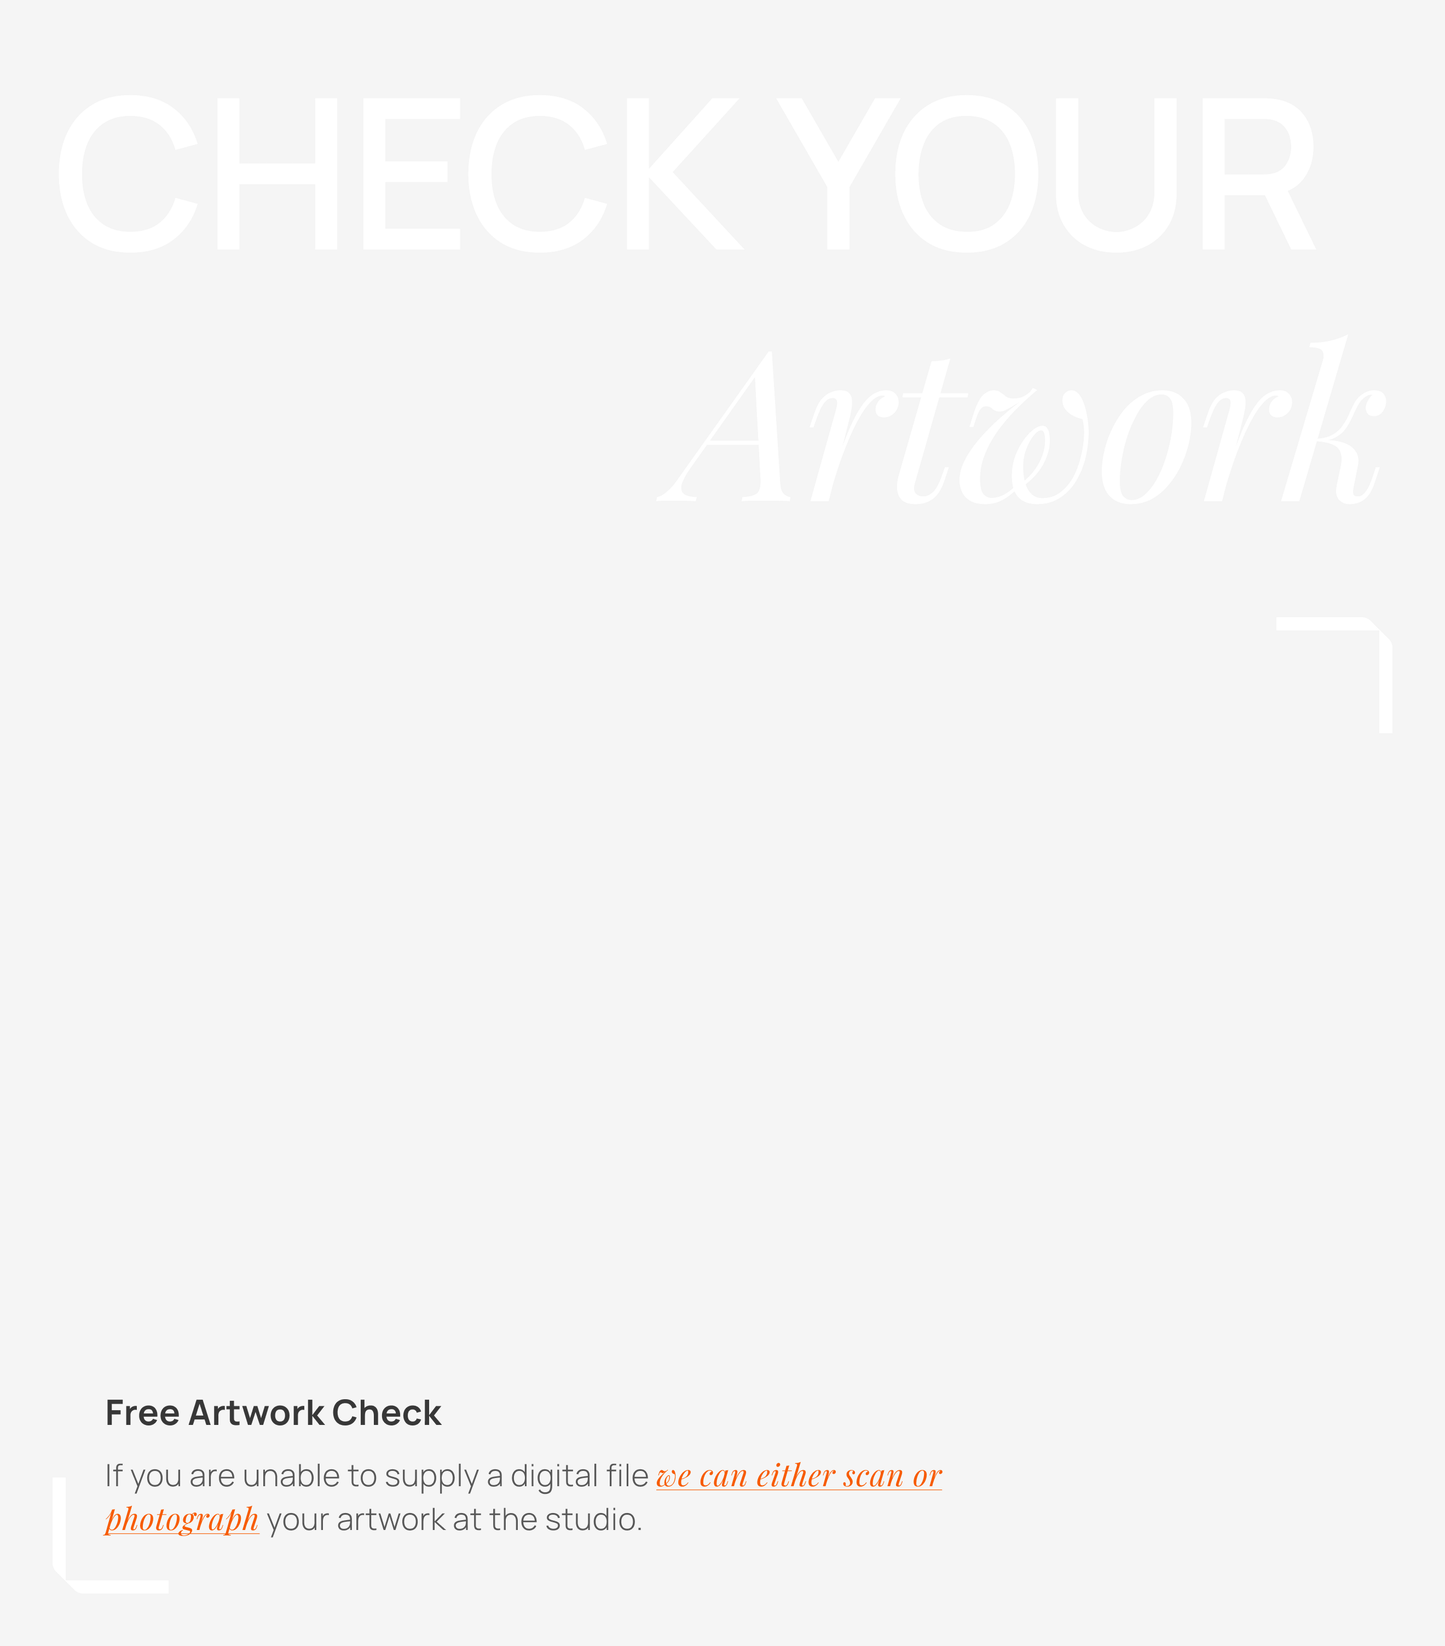 Upload your  Artwork